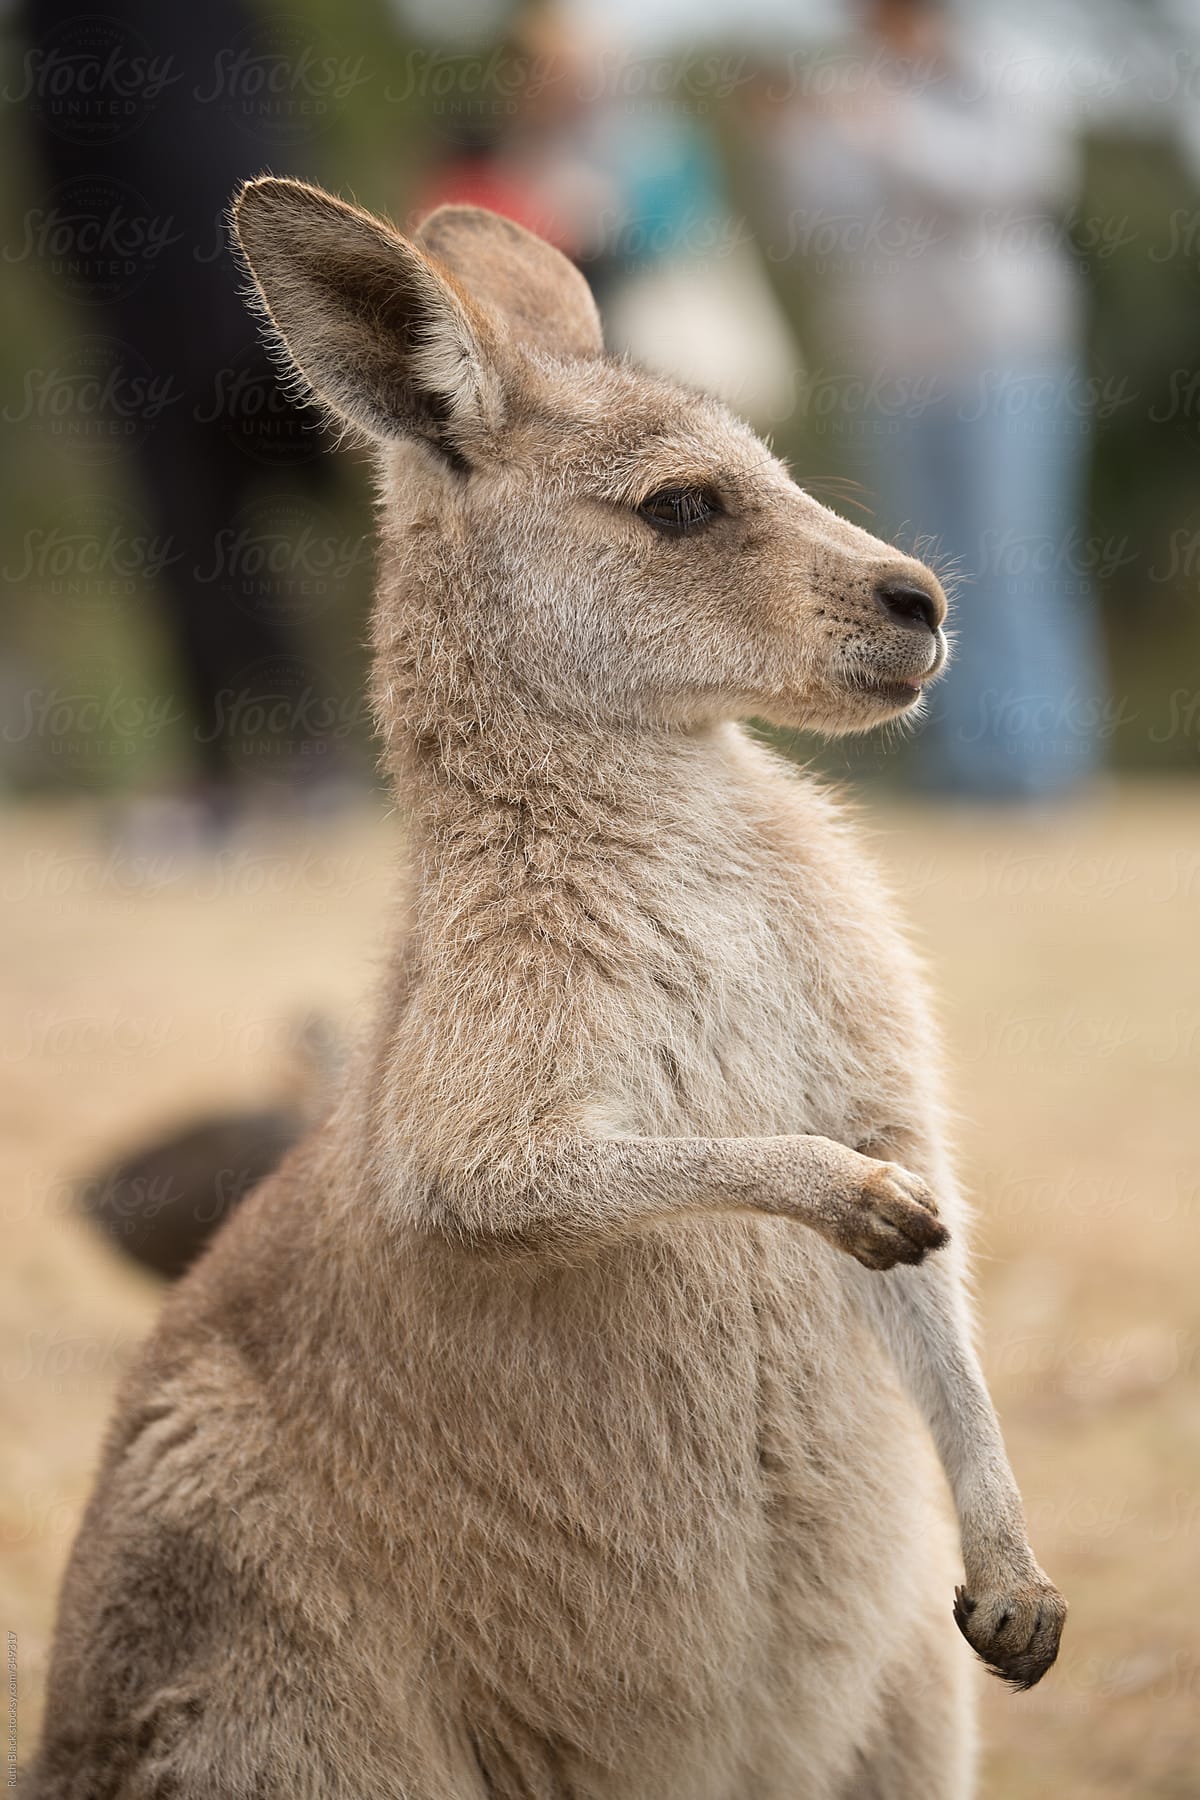 Kangaroo at a petting zoo